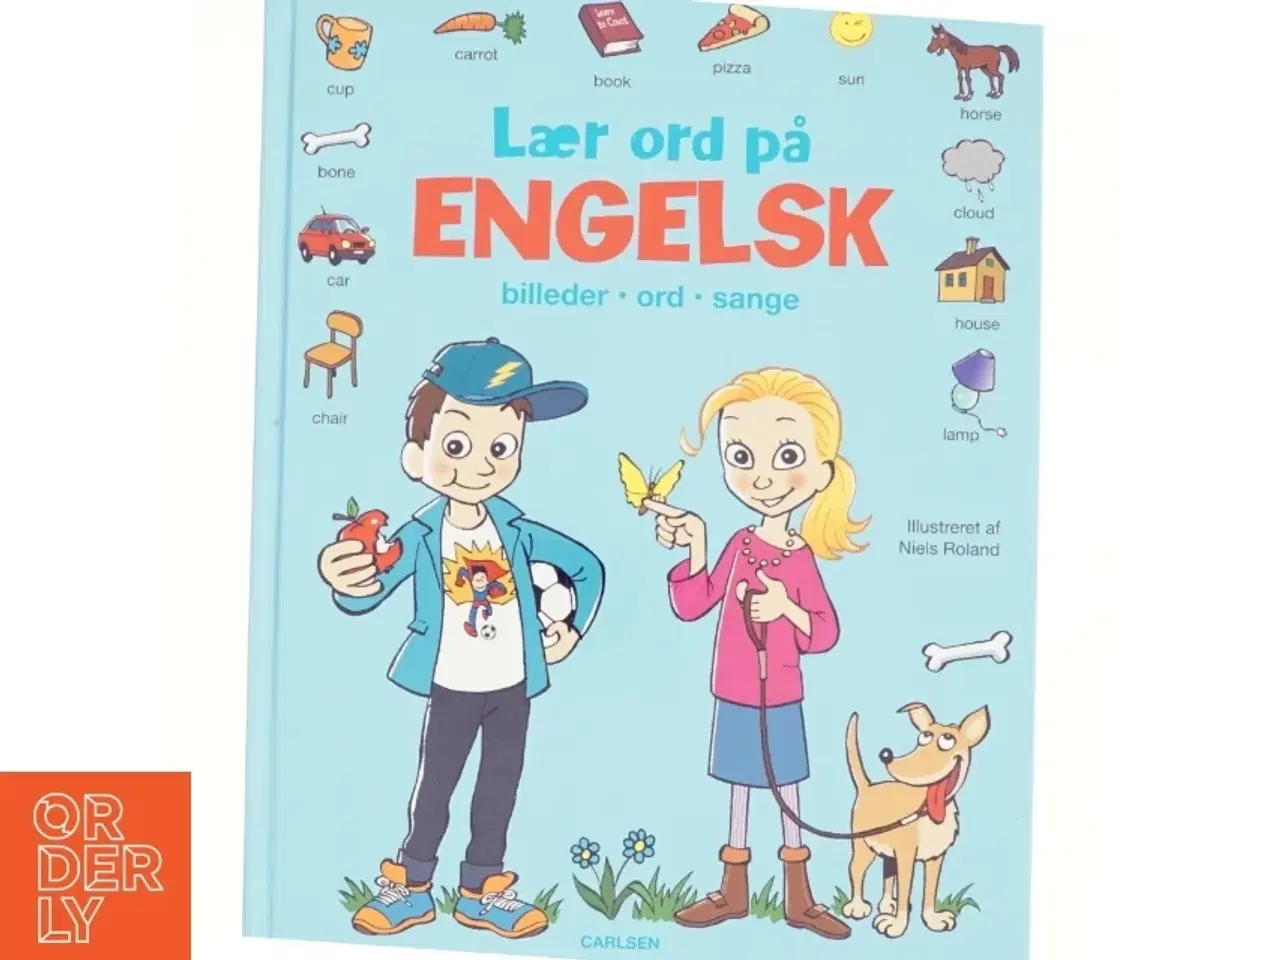 Billede 1 - Lær ord på Engelsk - Billeder, Ord, Sange (bog)